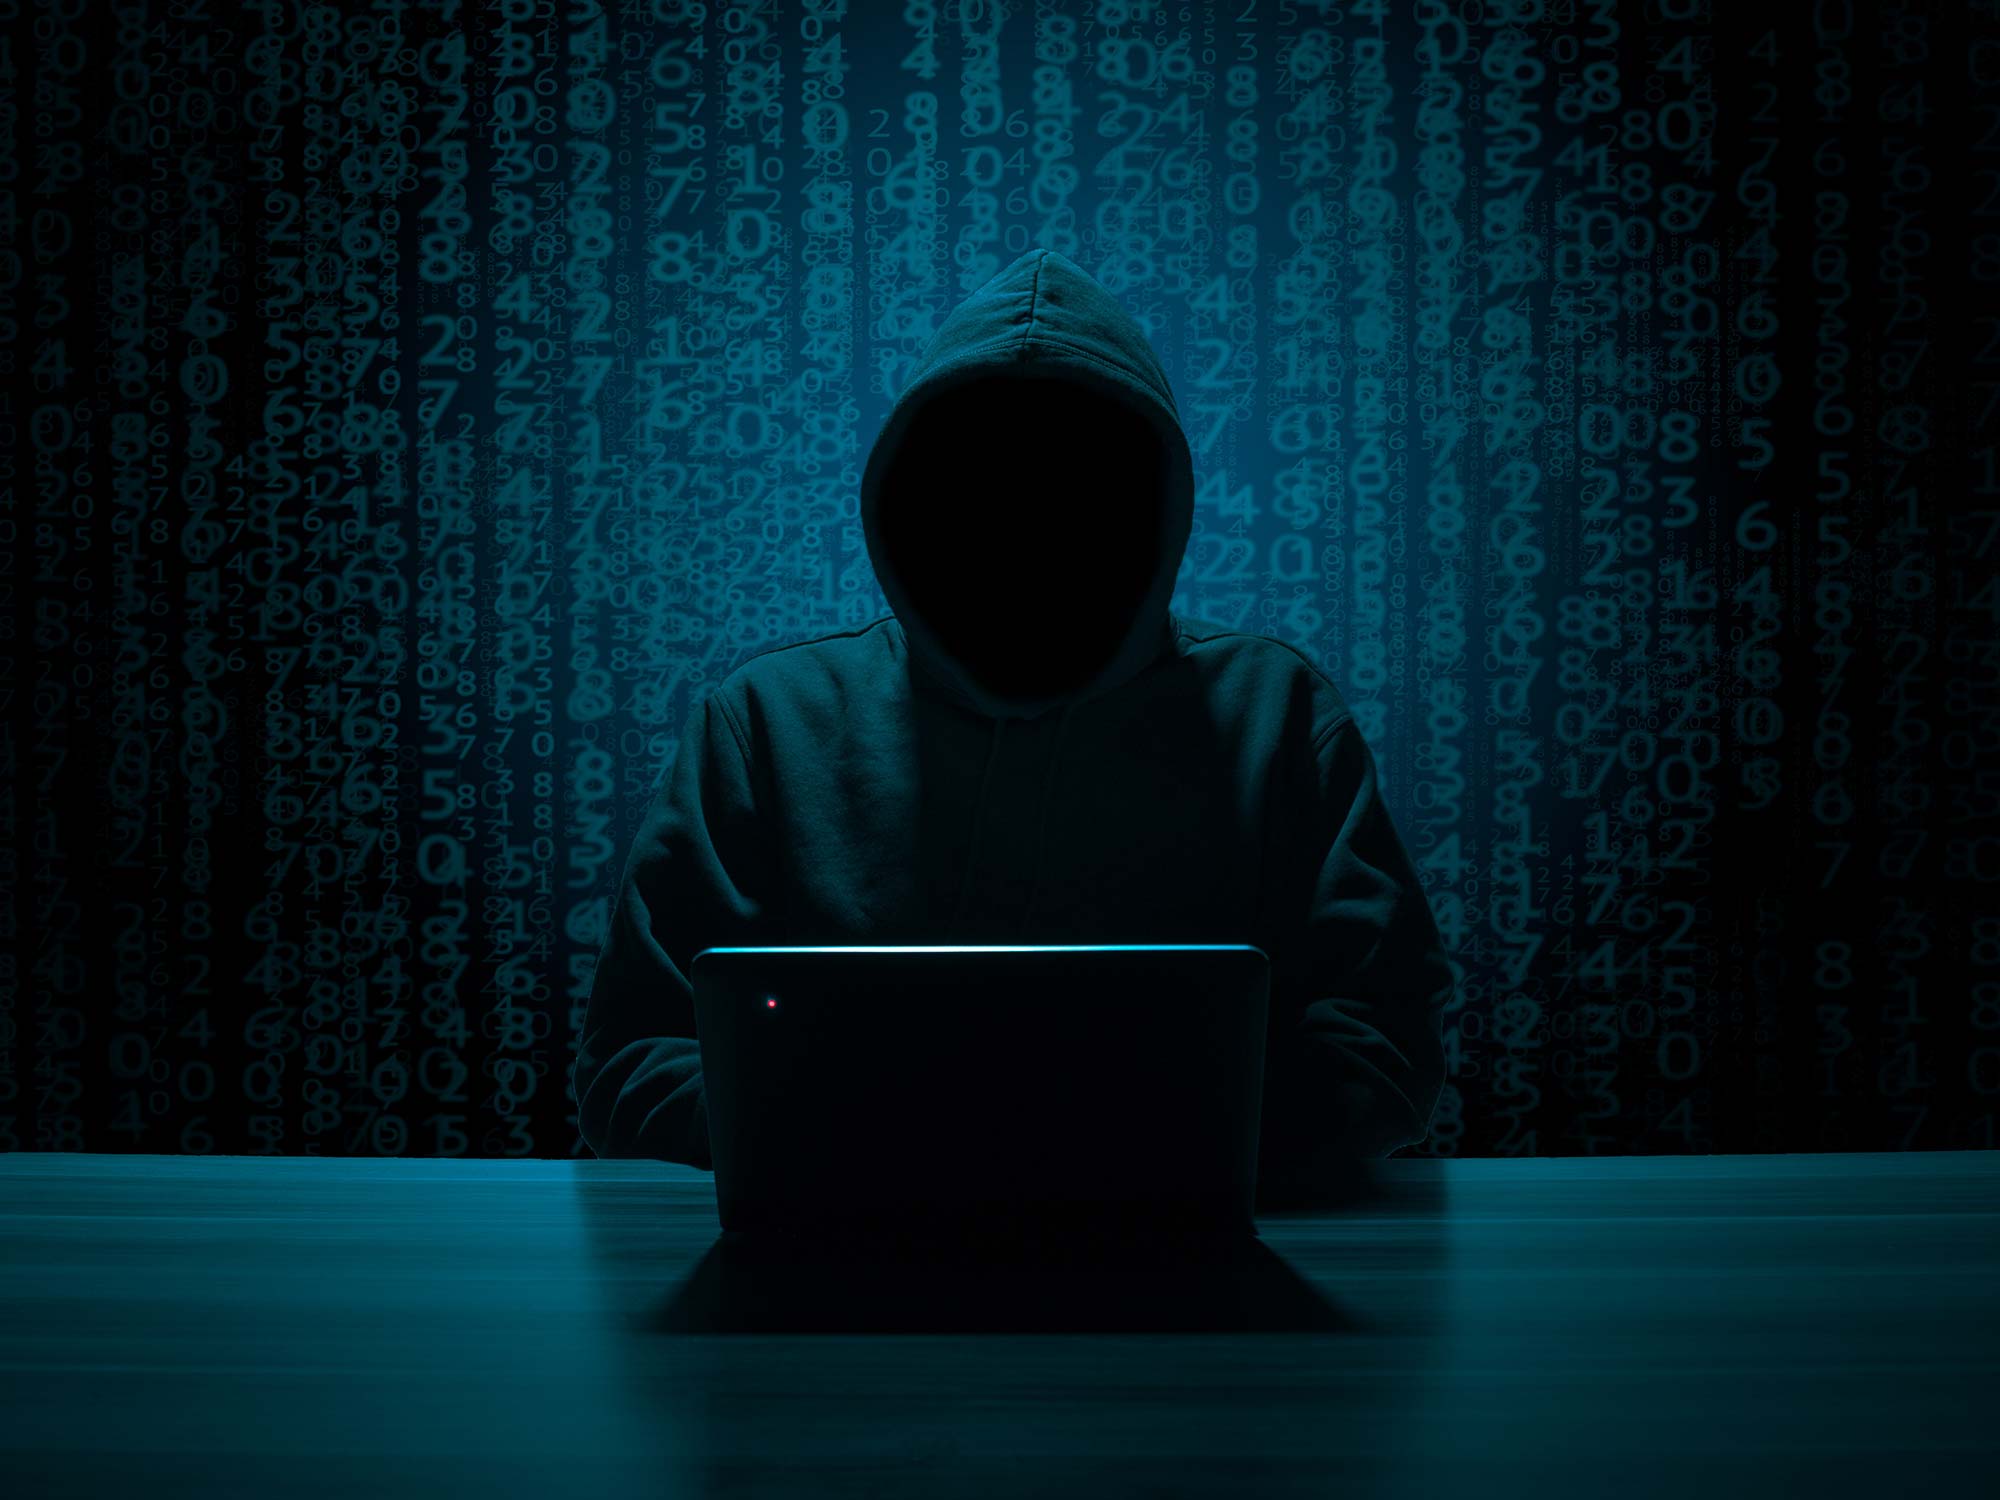 Spammer - spam - hacker - DDoS attack - attacker